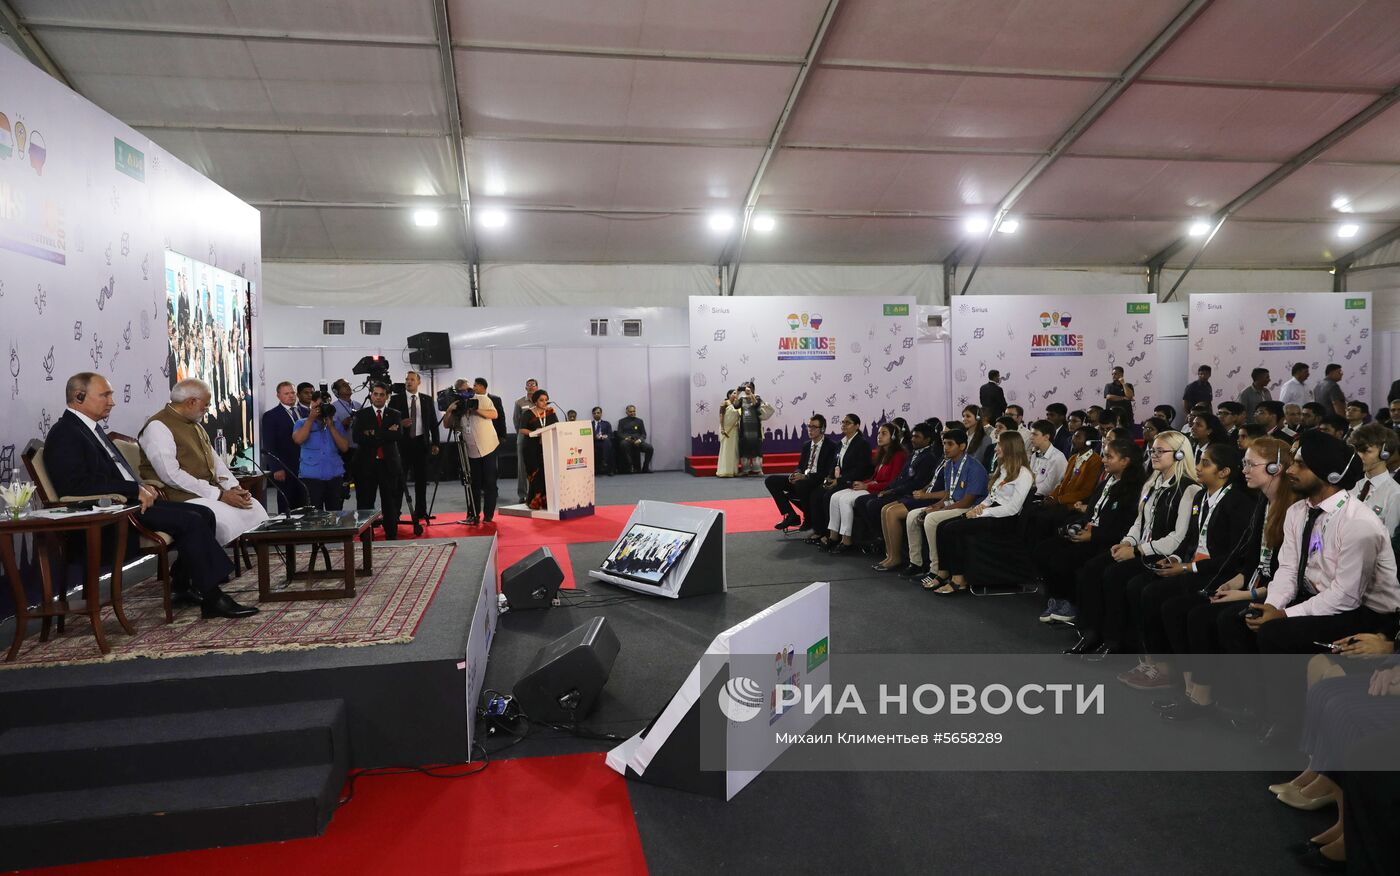 Официальный визит президента РФ В. Путина в Индию. День второй